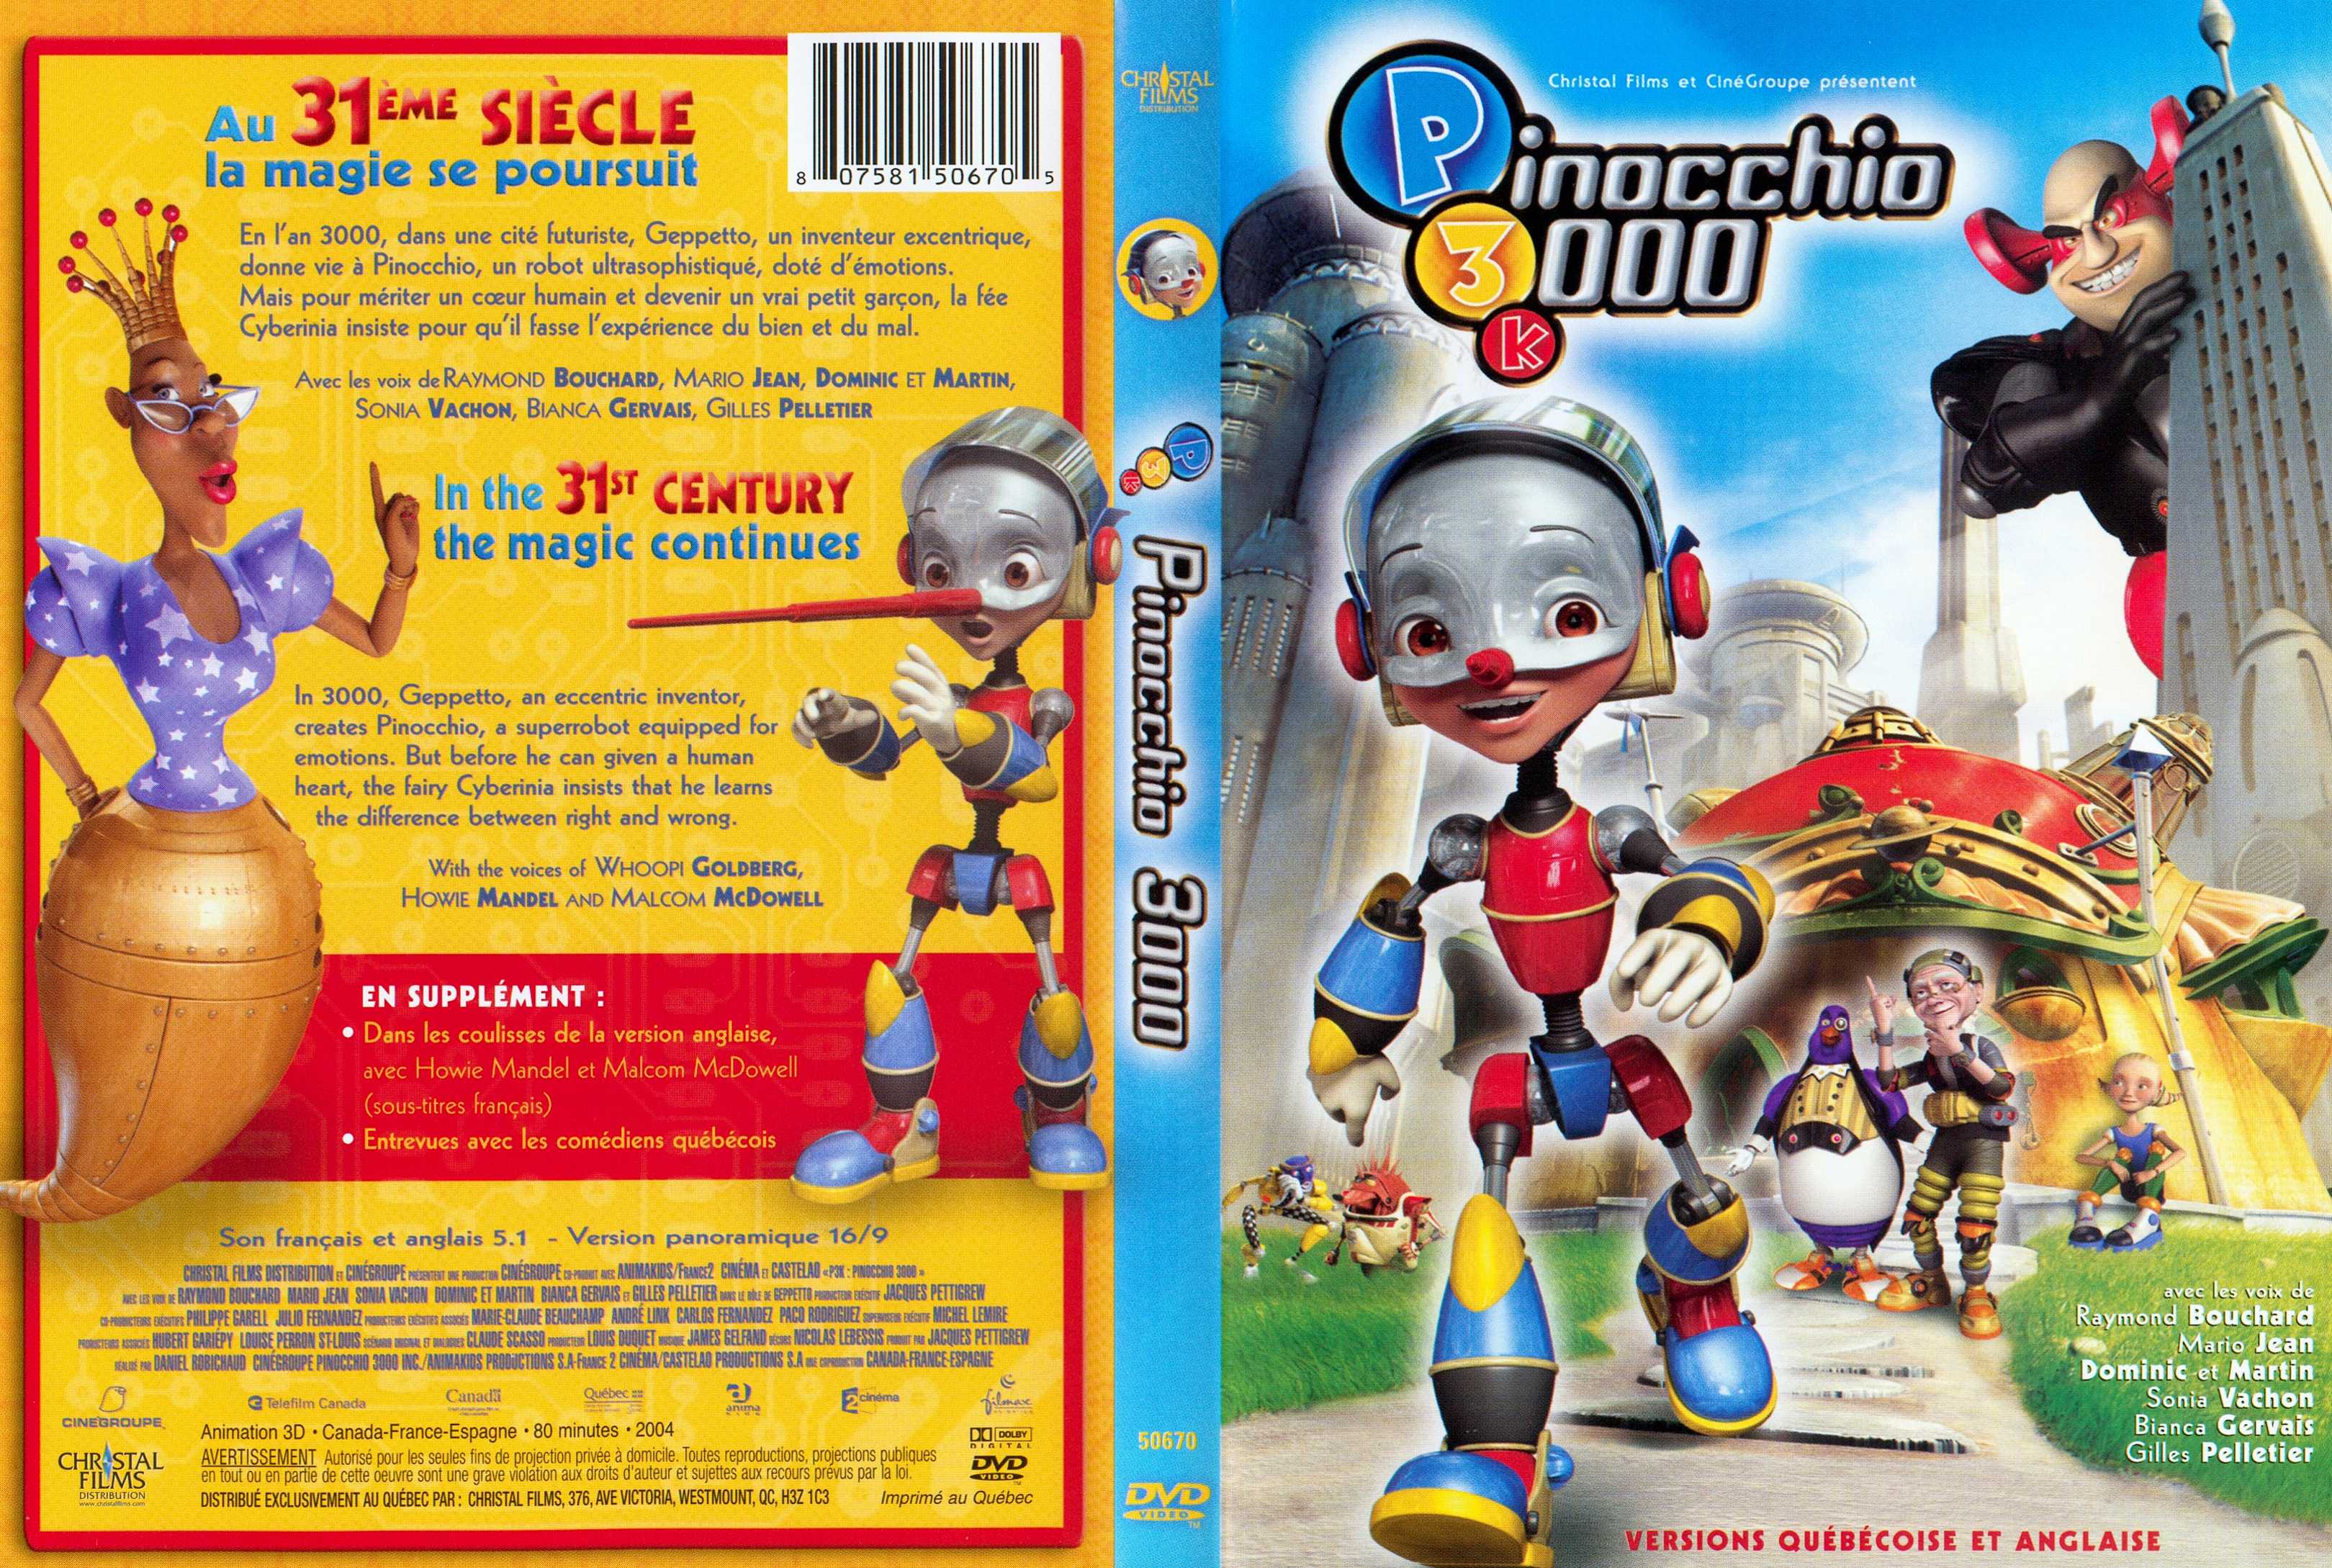 Jaquette DVD Pinocchio 3000 K